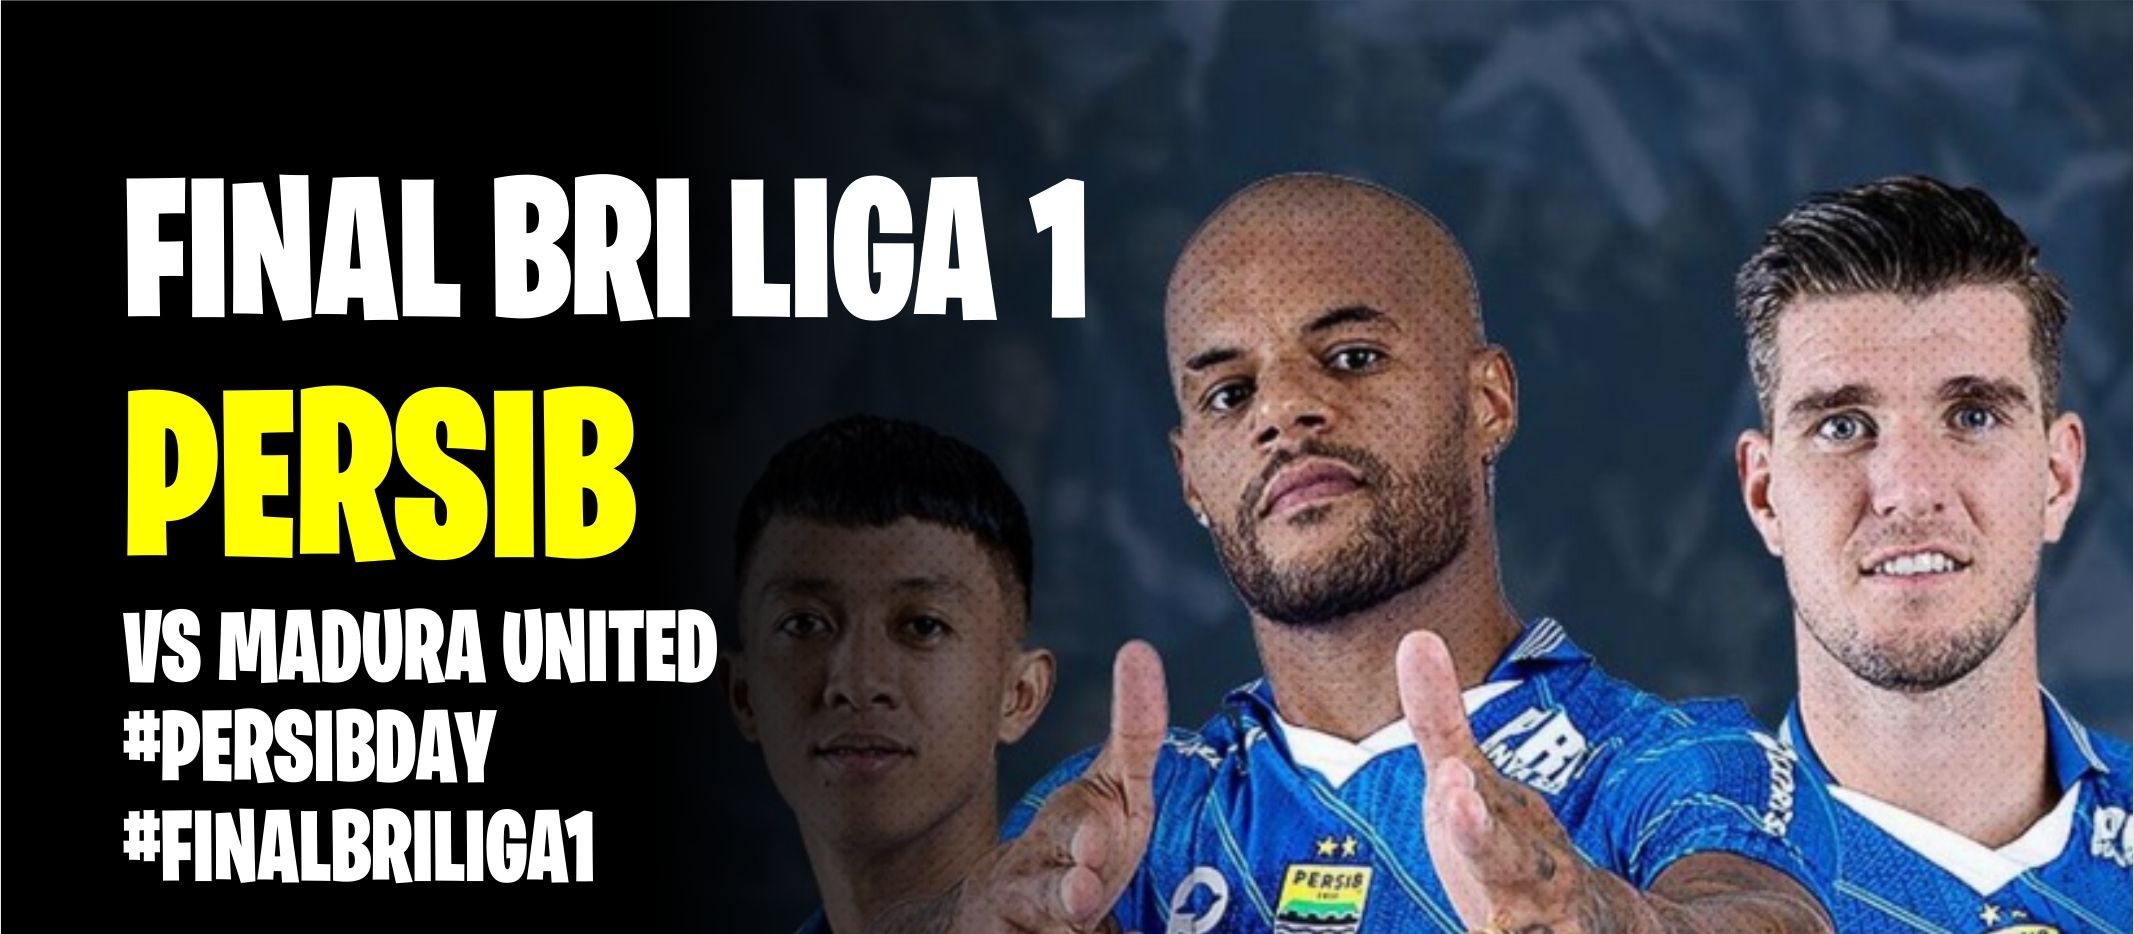 Jadwal pertandingan Persib Bandung vs Madura United malam hari ini kick off jam 19.00 WIB